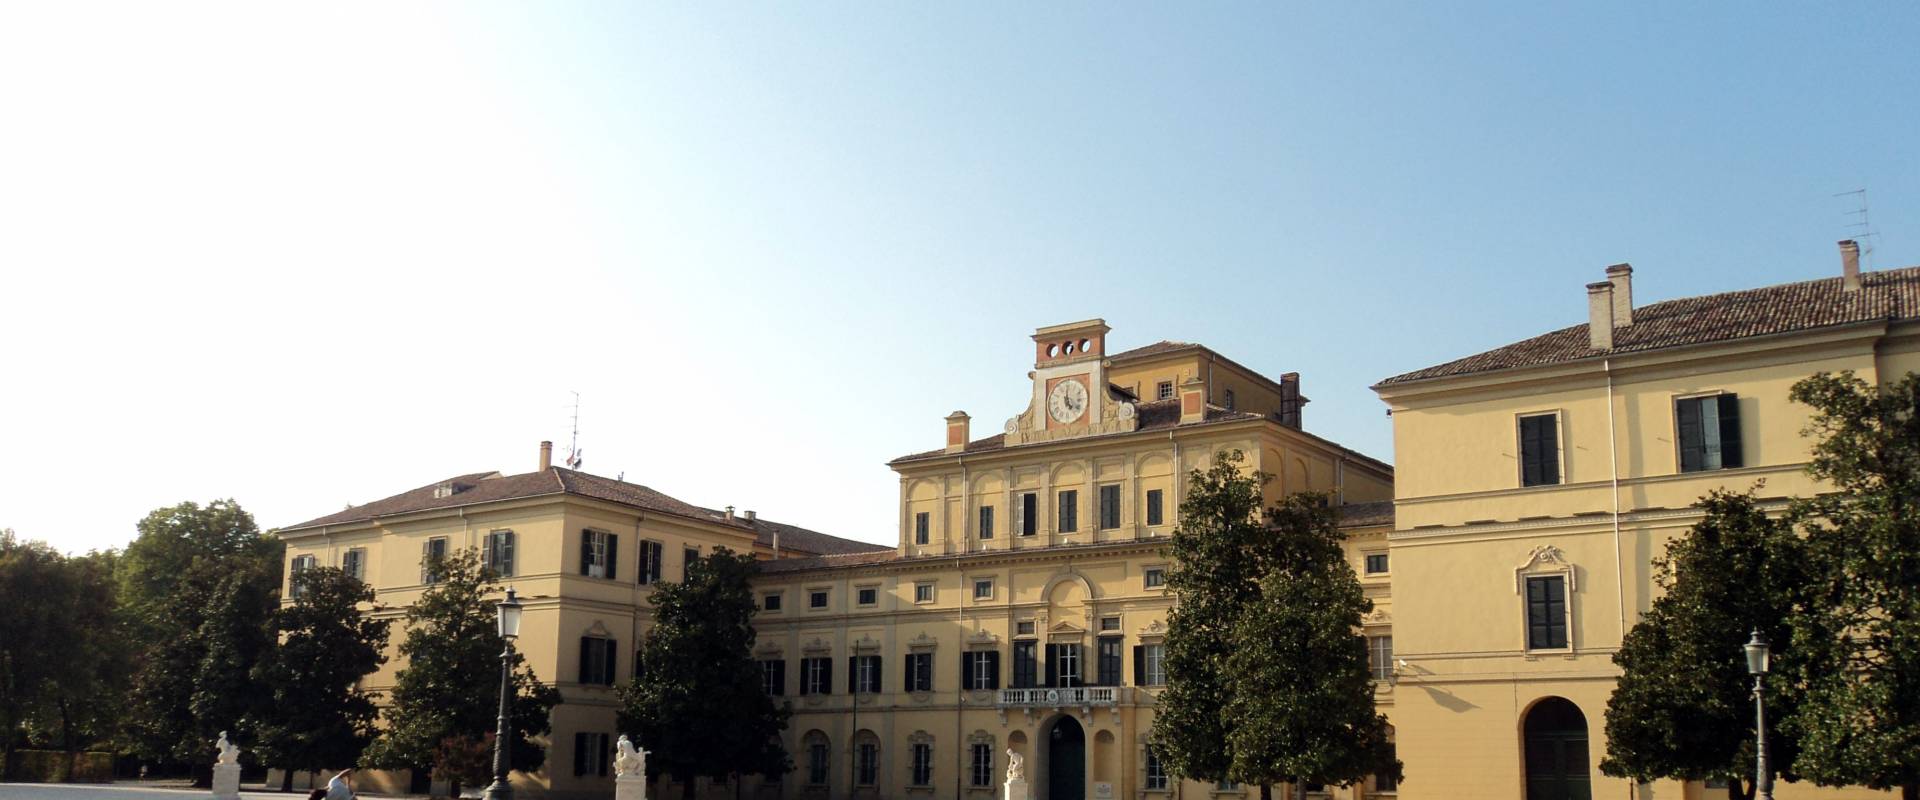 Palazzo Ducale a settembre foto di YouPercussion